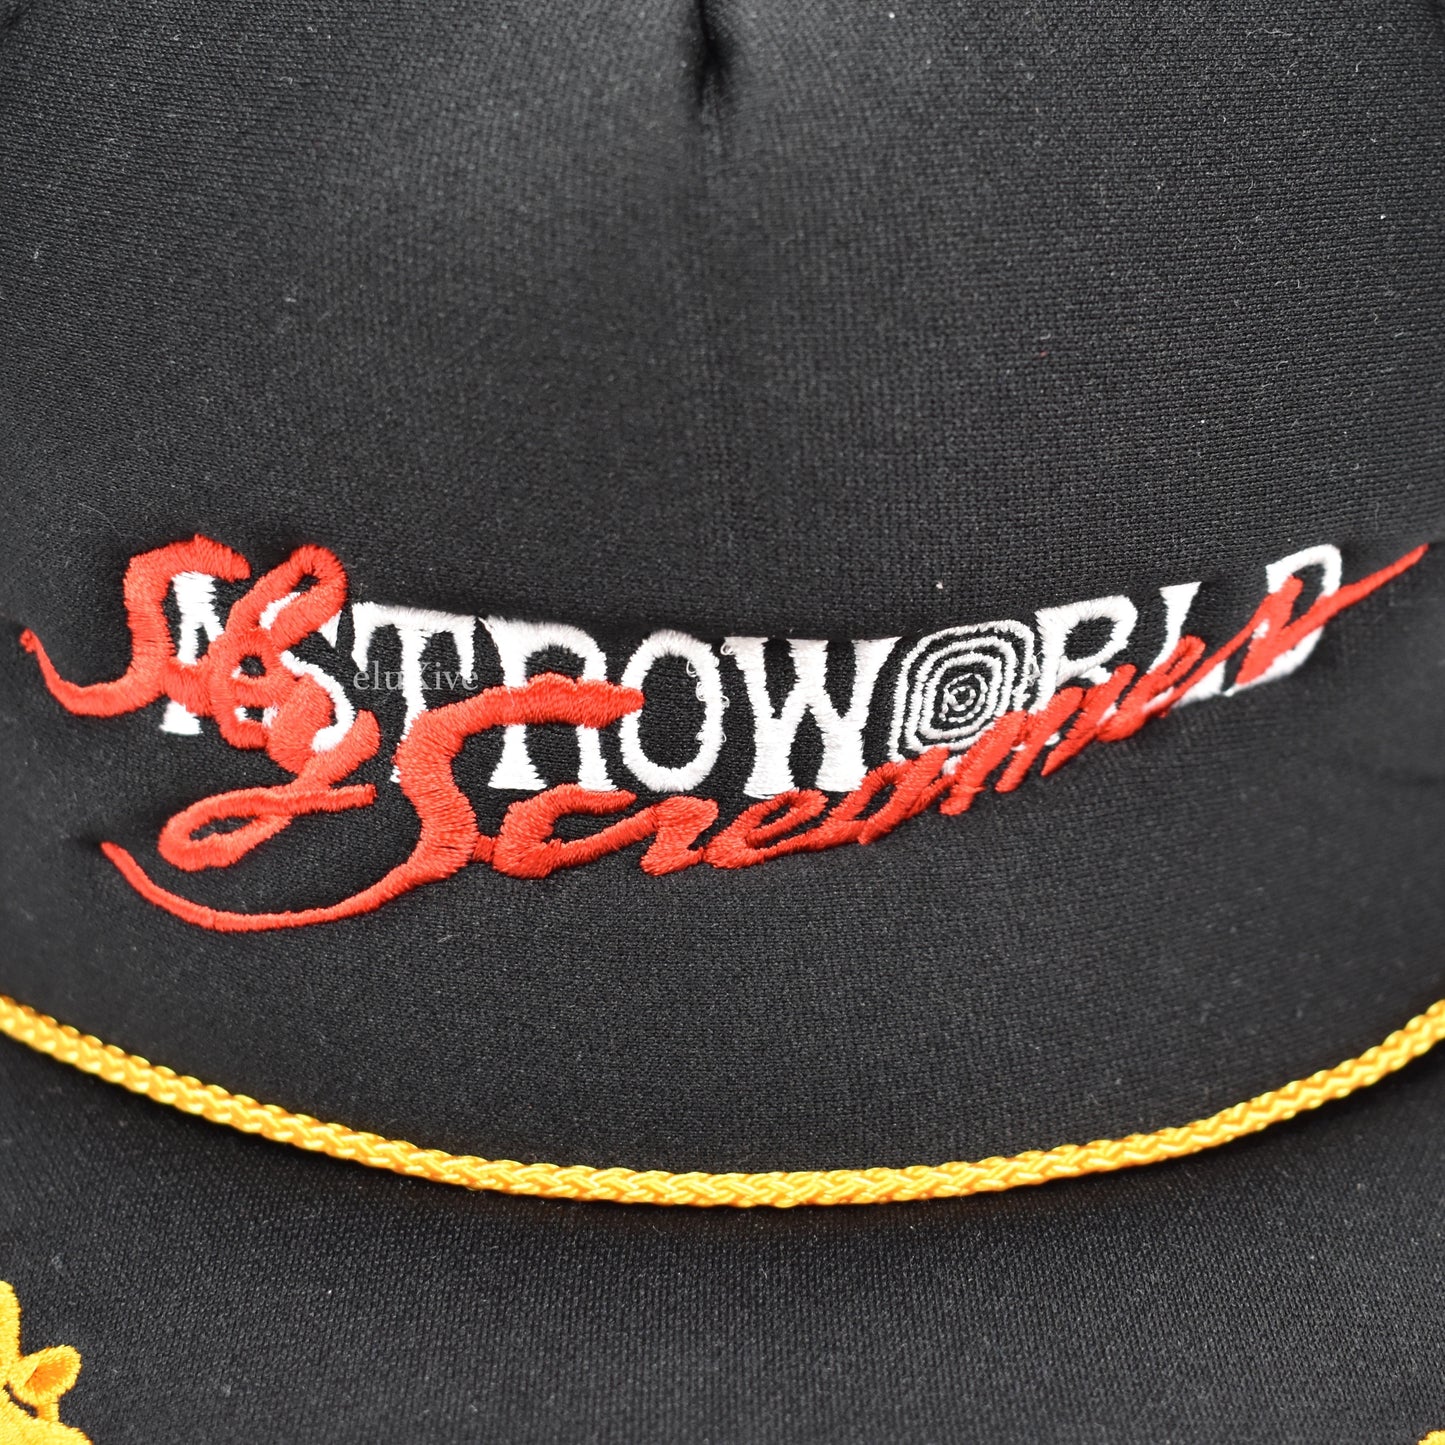 Travis Scott x DSM - Astroworld 'Screamer' Logo Hat